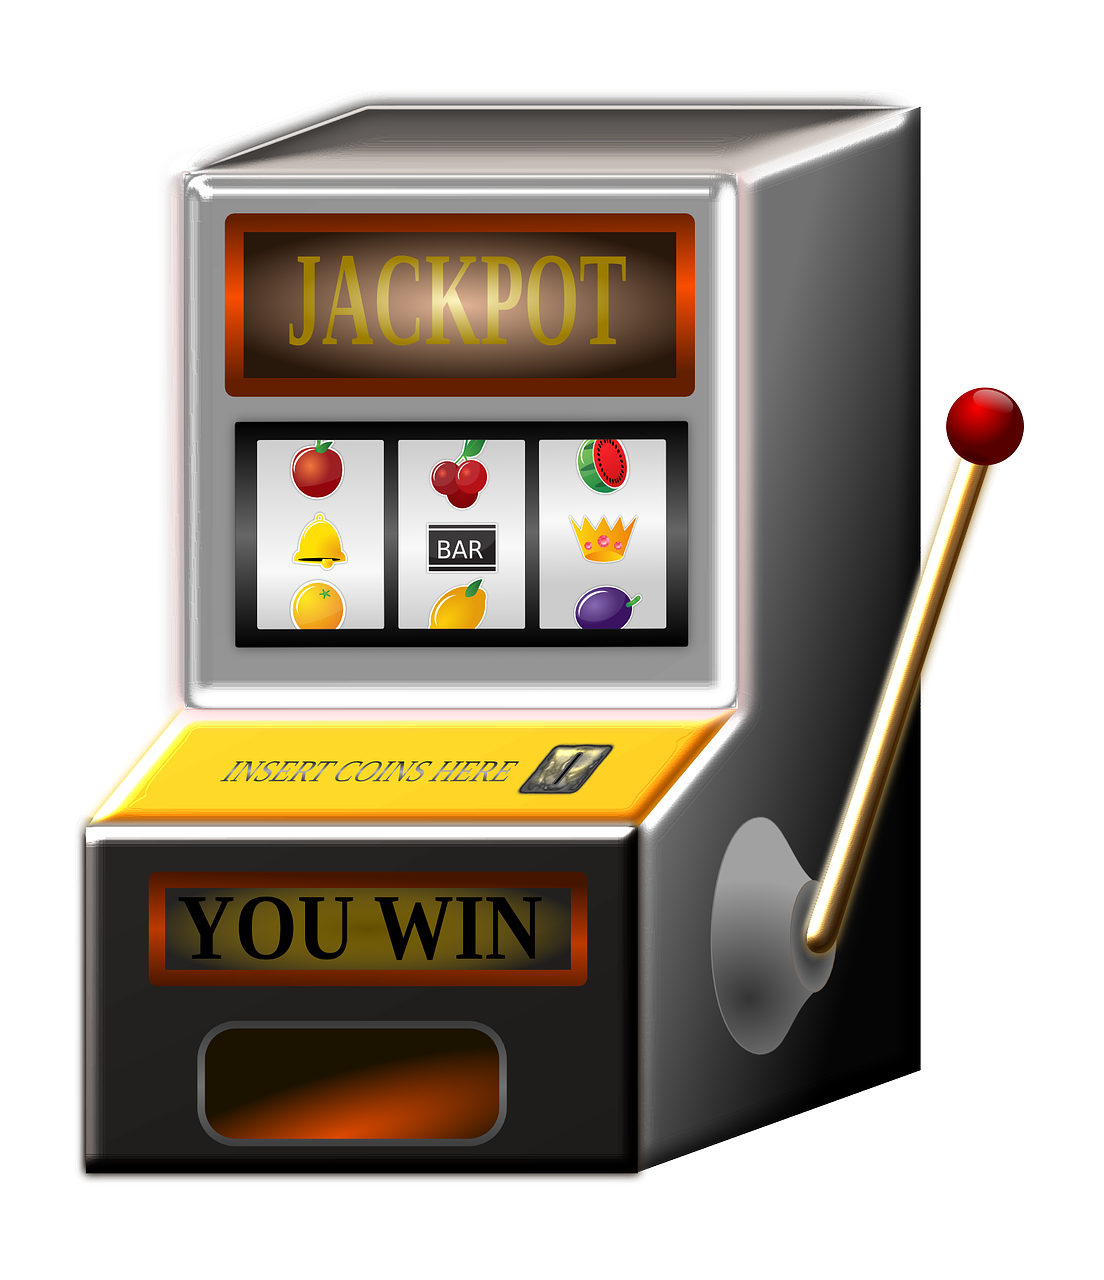 jackpots at no deposit casinos